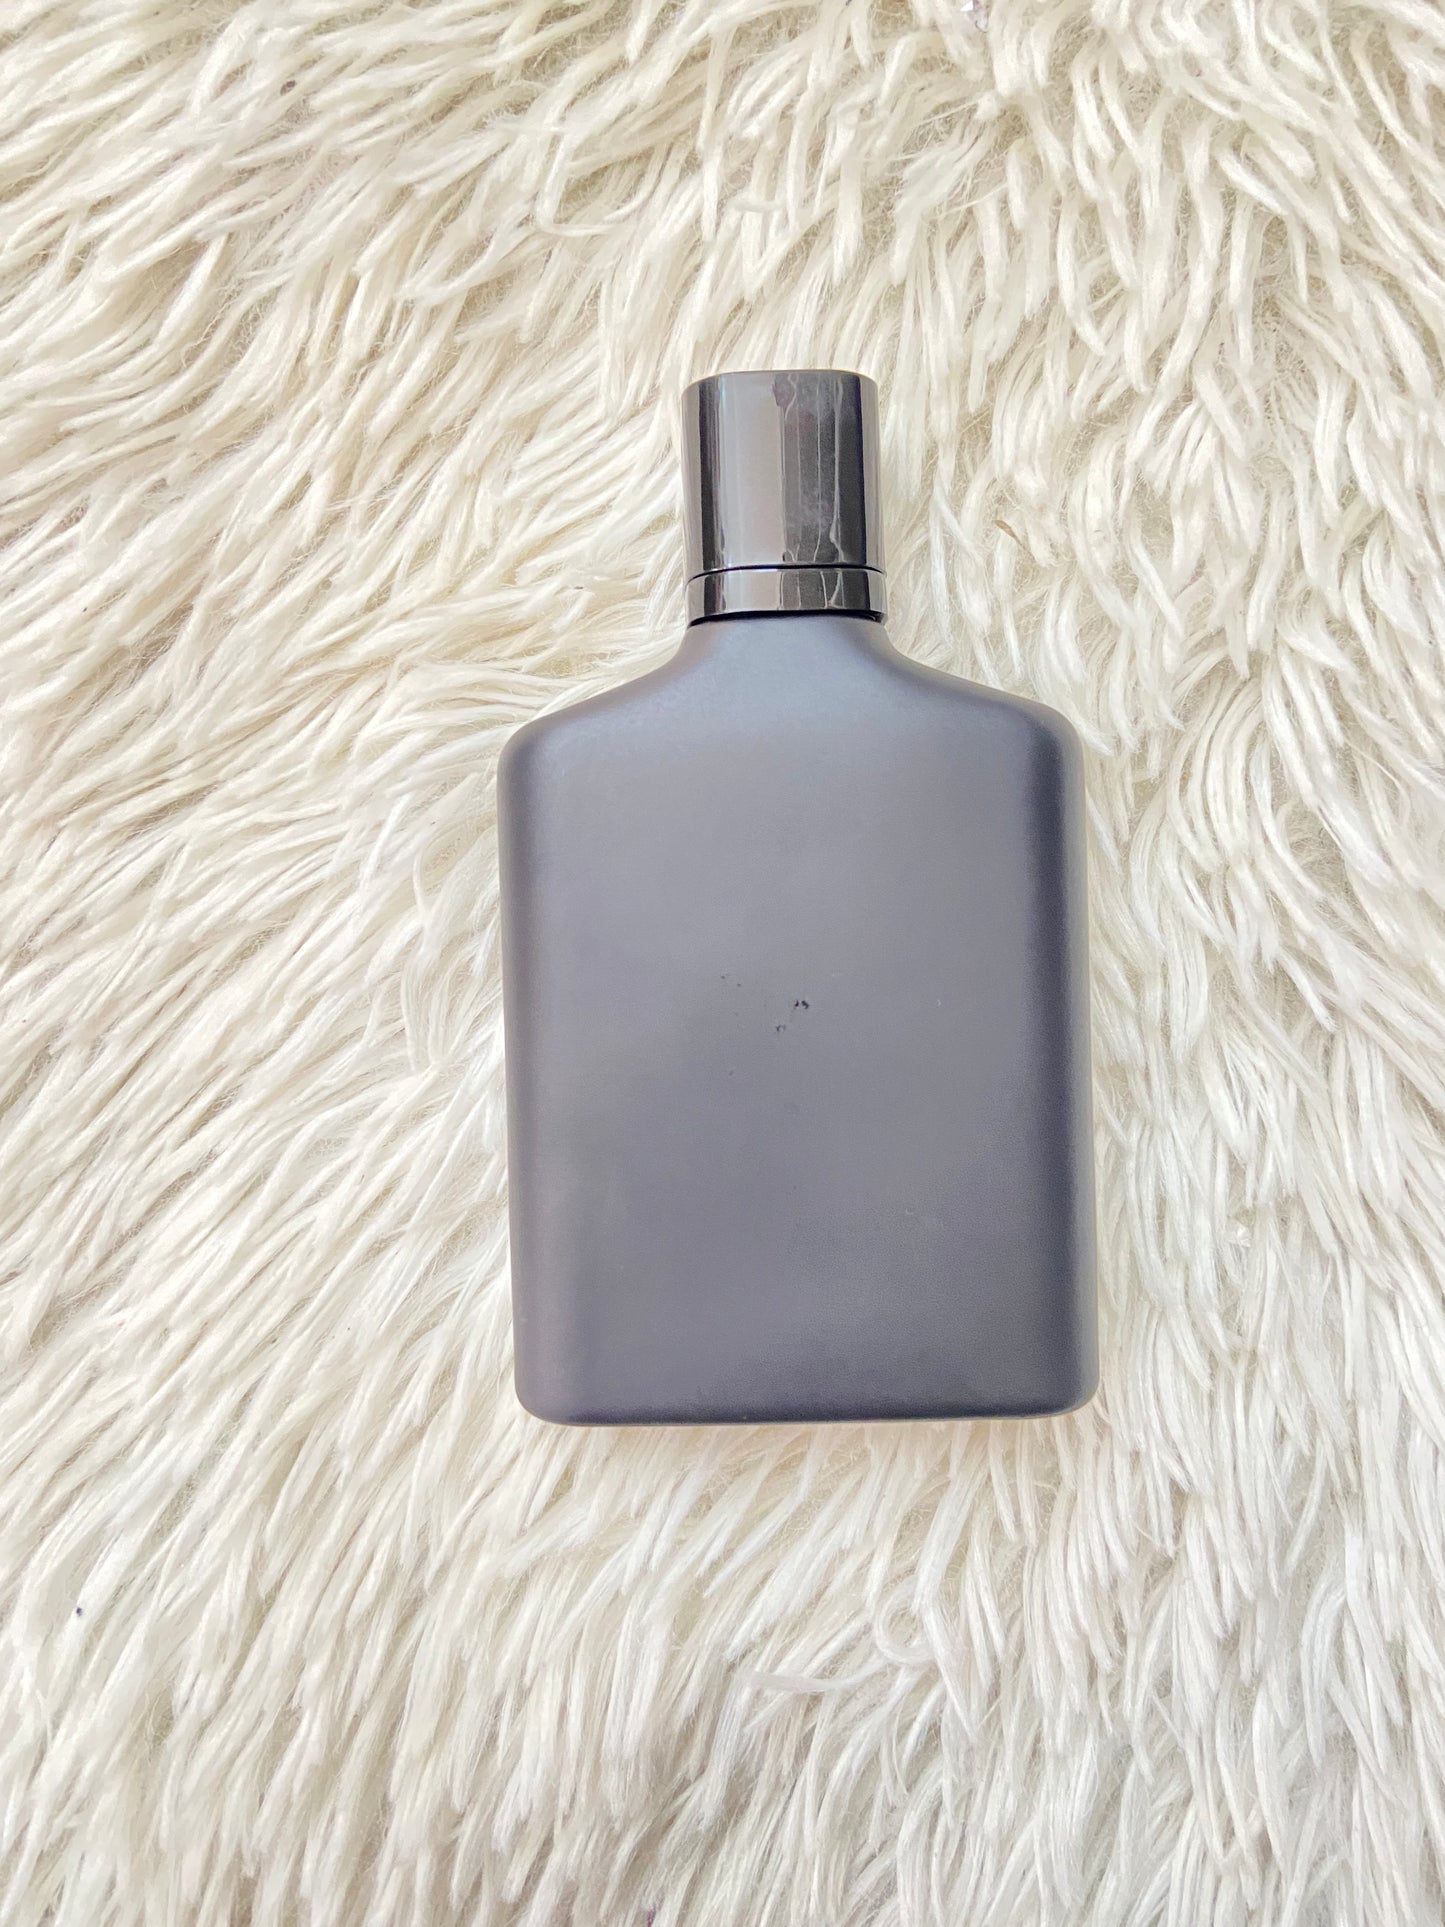 Perfume Zara Man original SILVER, para hombres